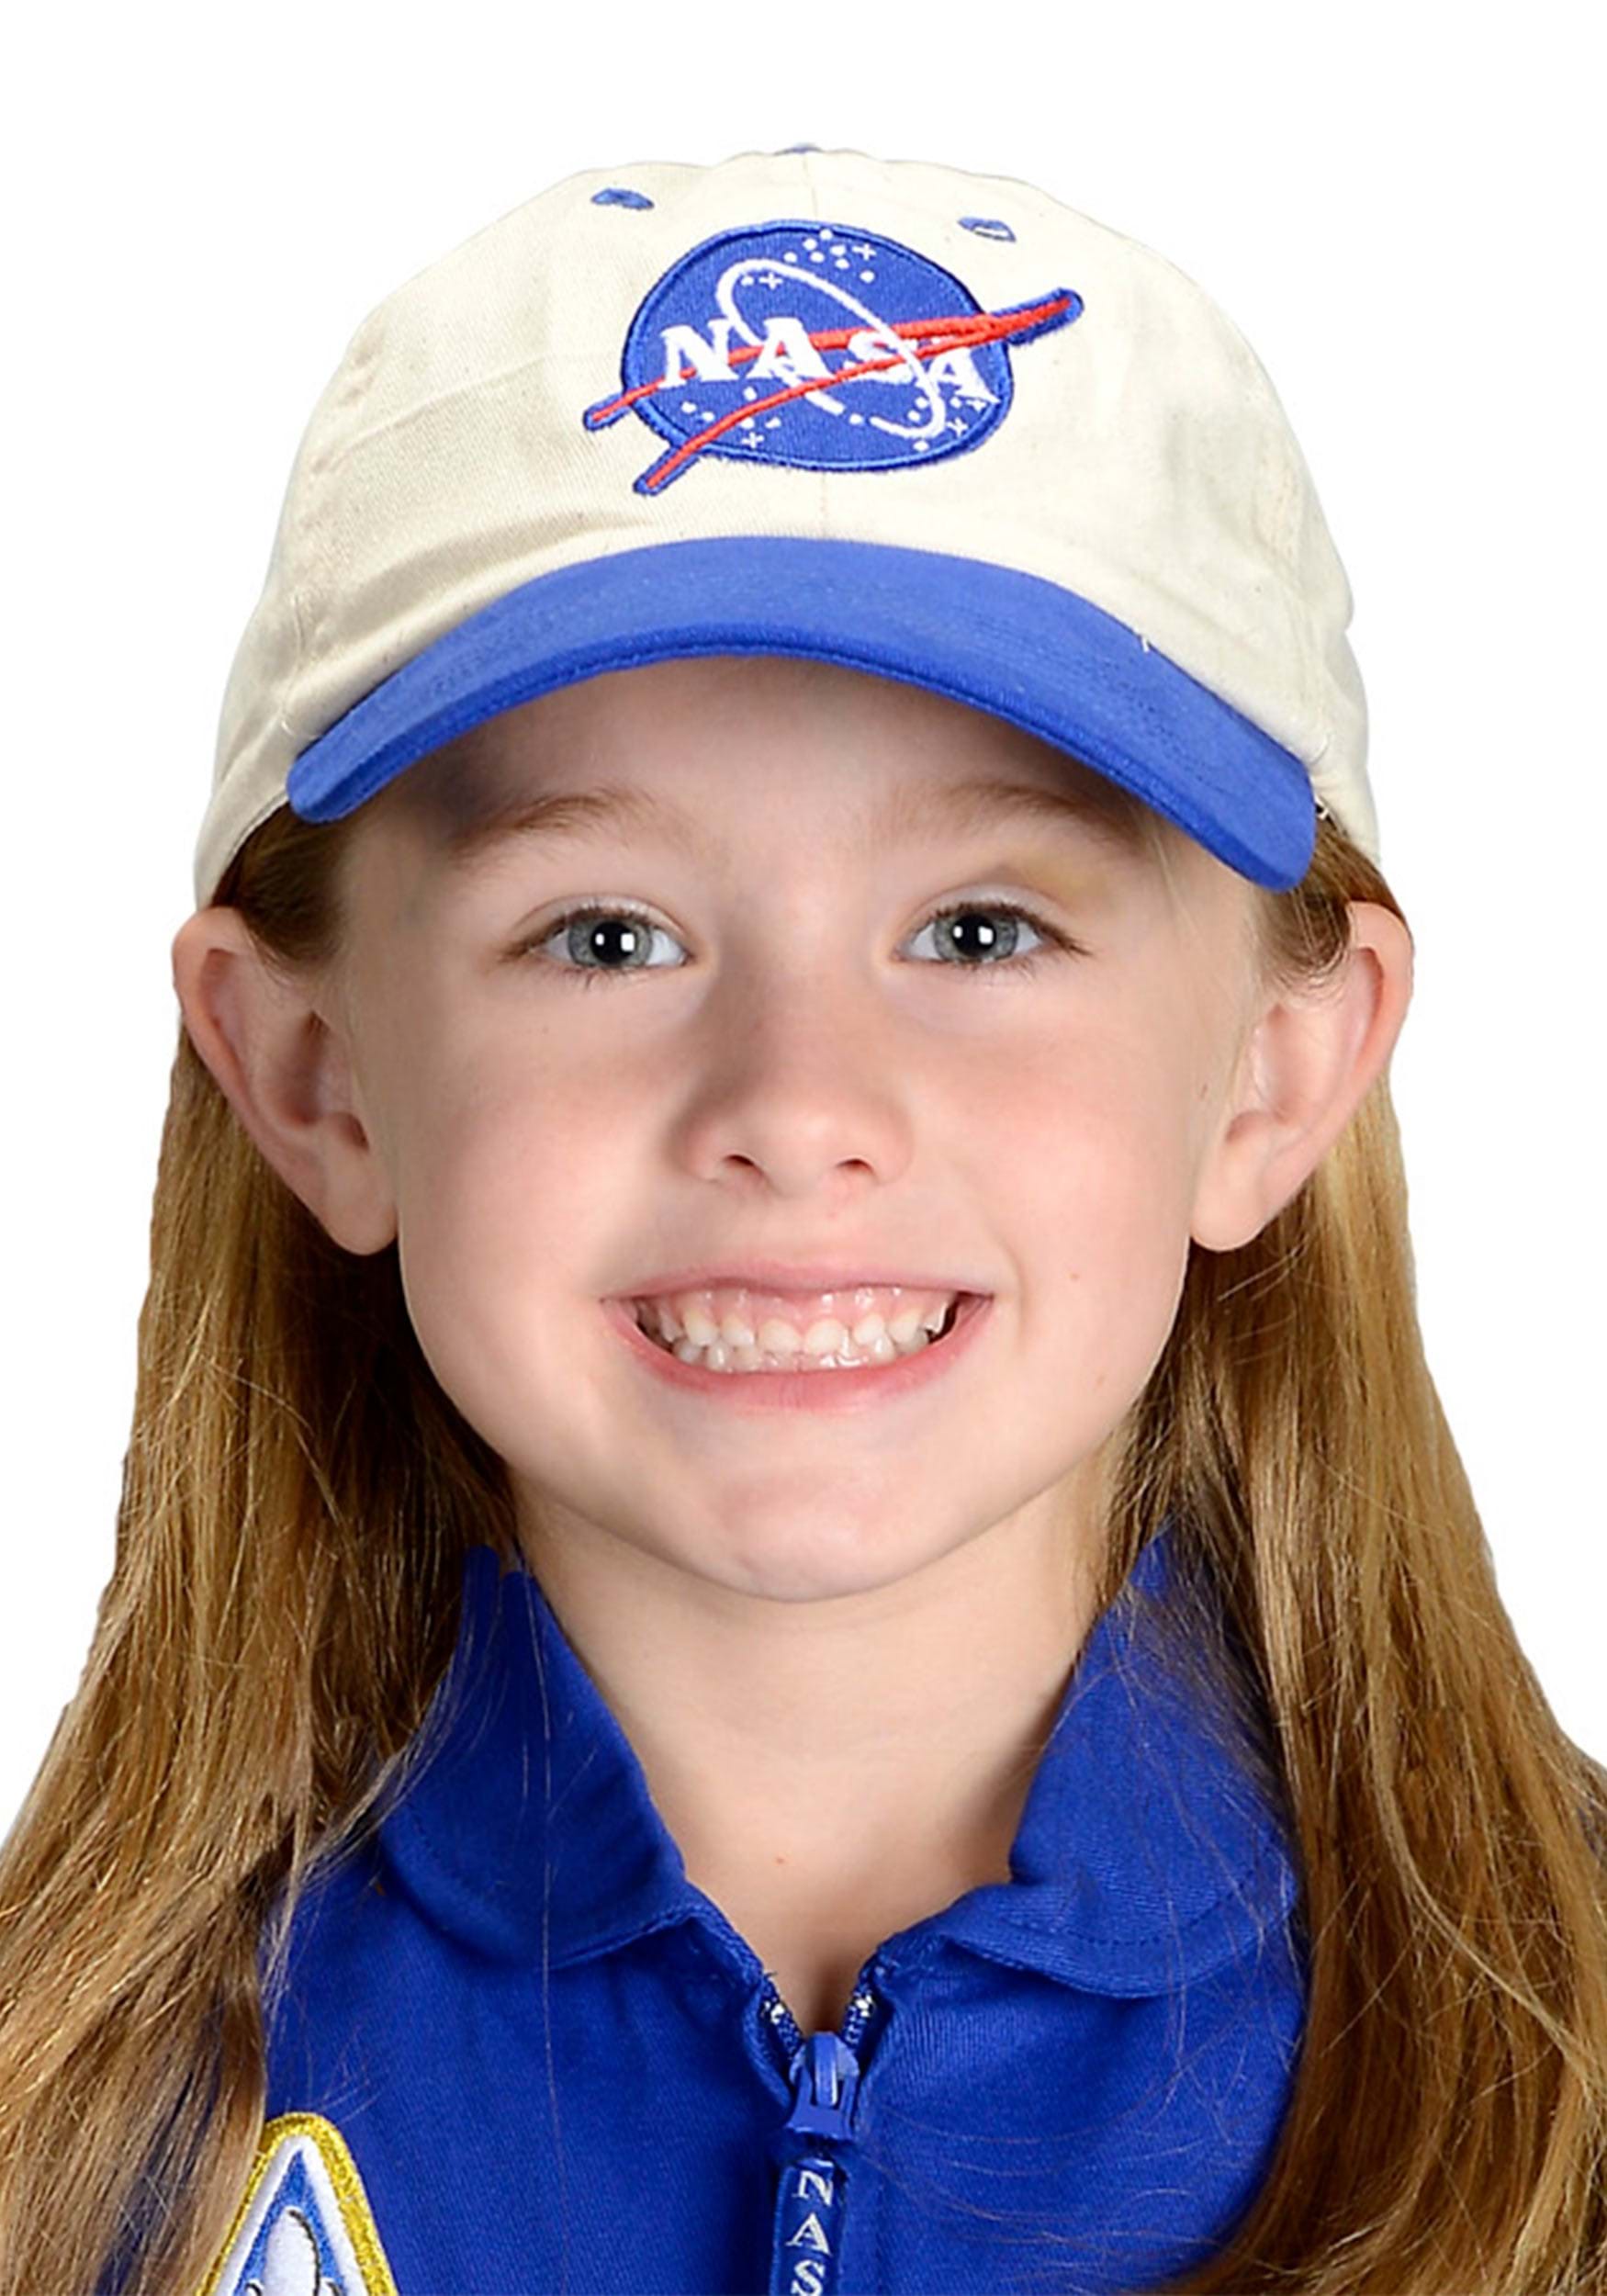 NASA Kid's Cap